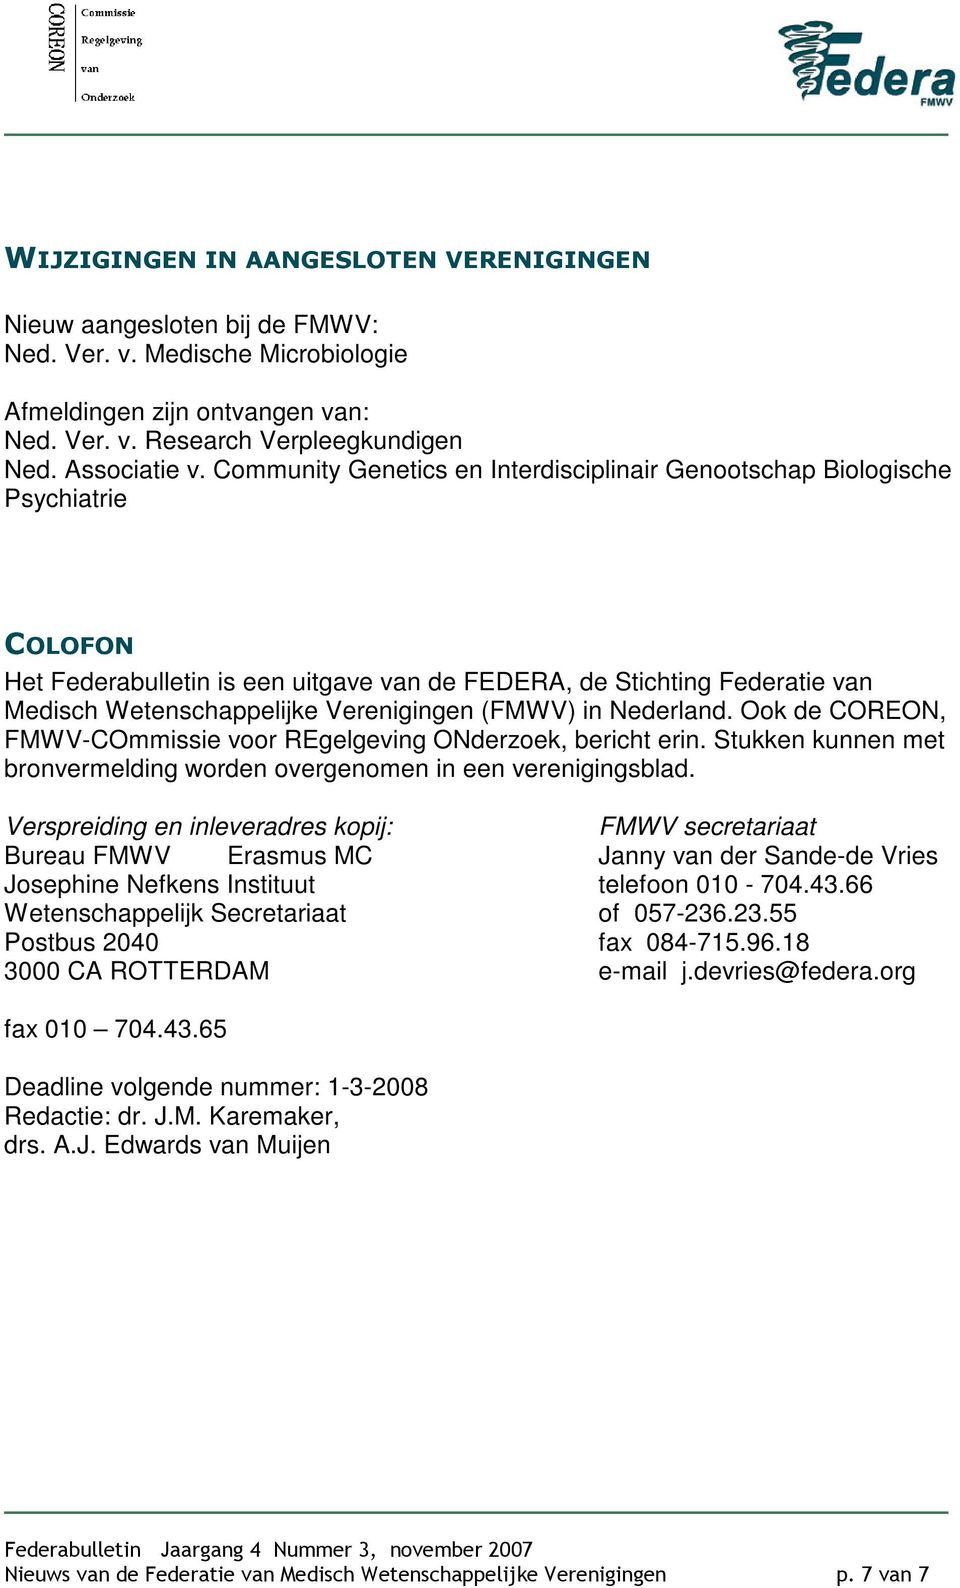 (FMWV) in Nederland. Ook de COREON, FMWV-COmmissie voor REgelgeving ONderzoek, bericht erin. Stukken kunnen met bronvermelding worden overgenomen in een verenigingsblad.